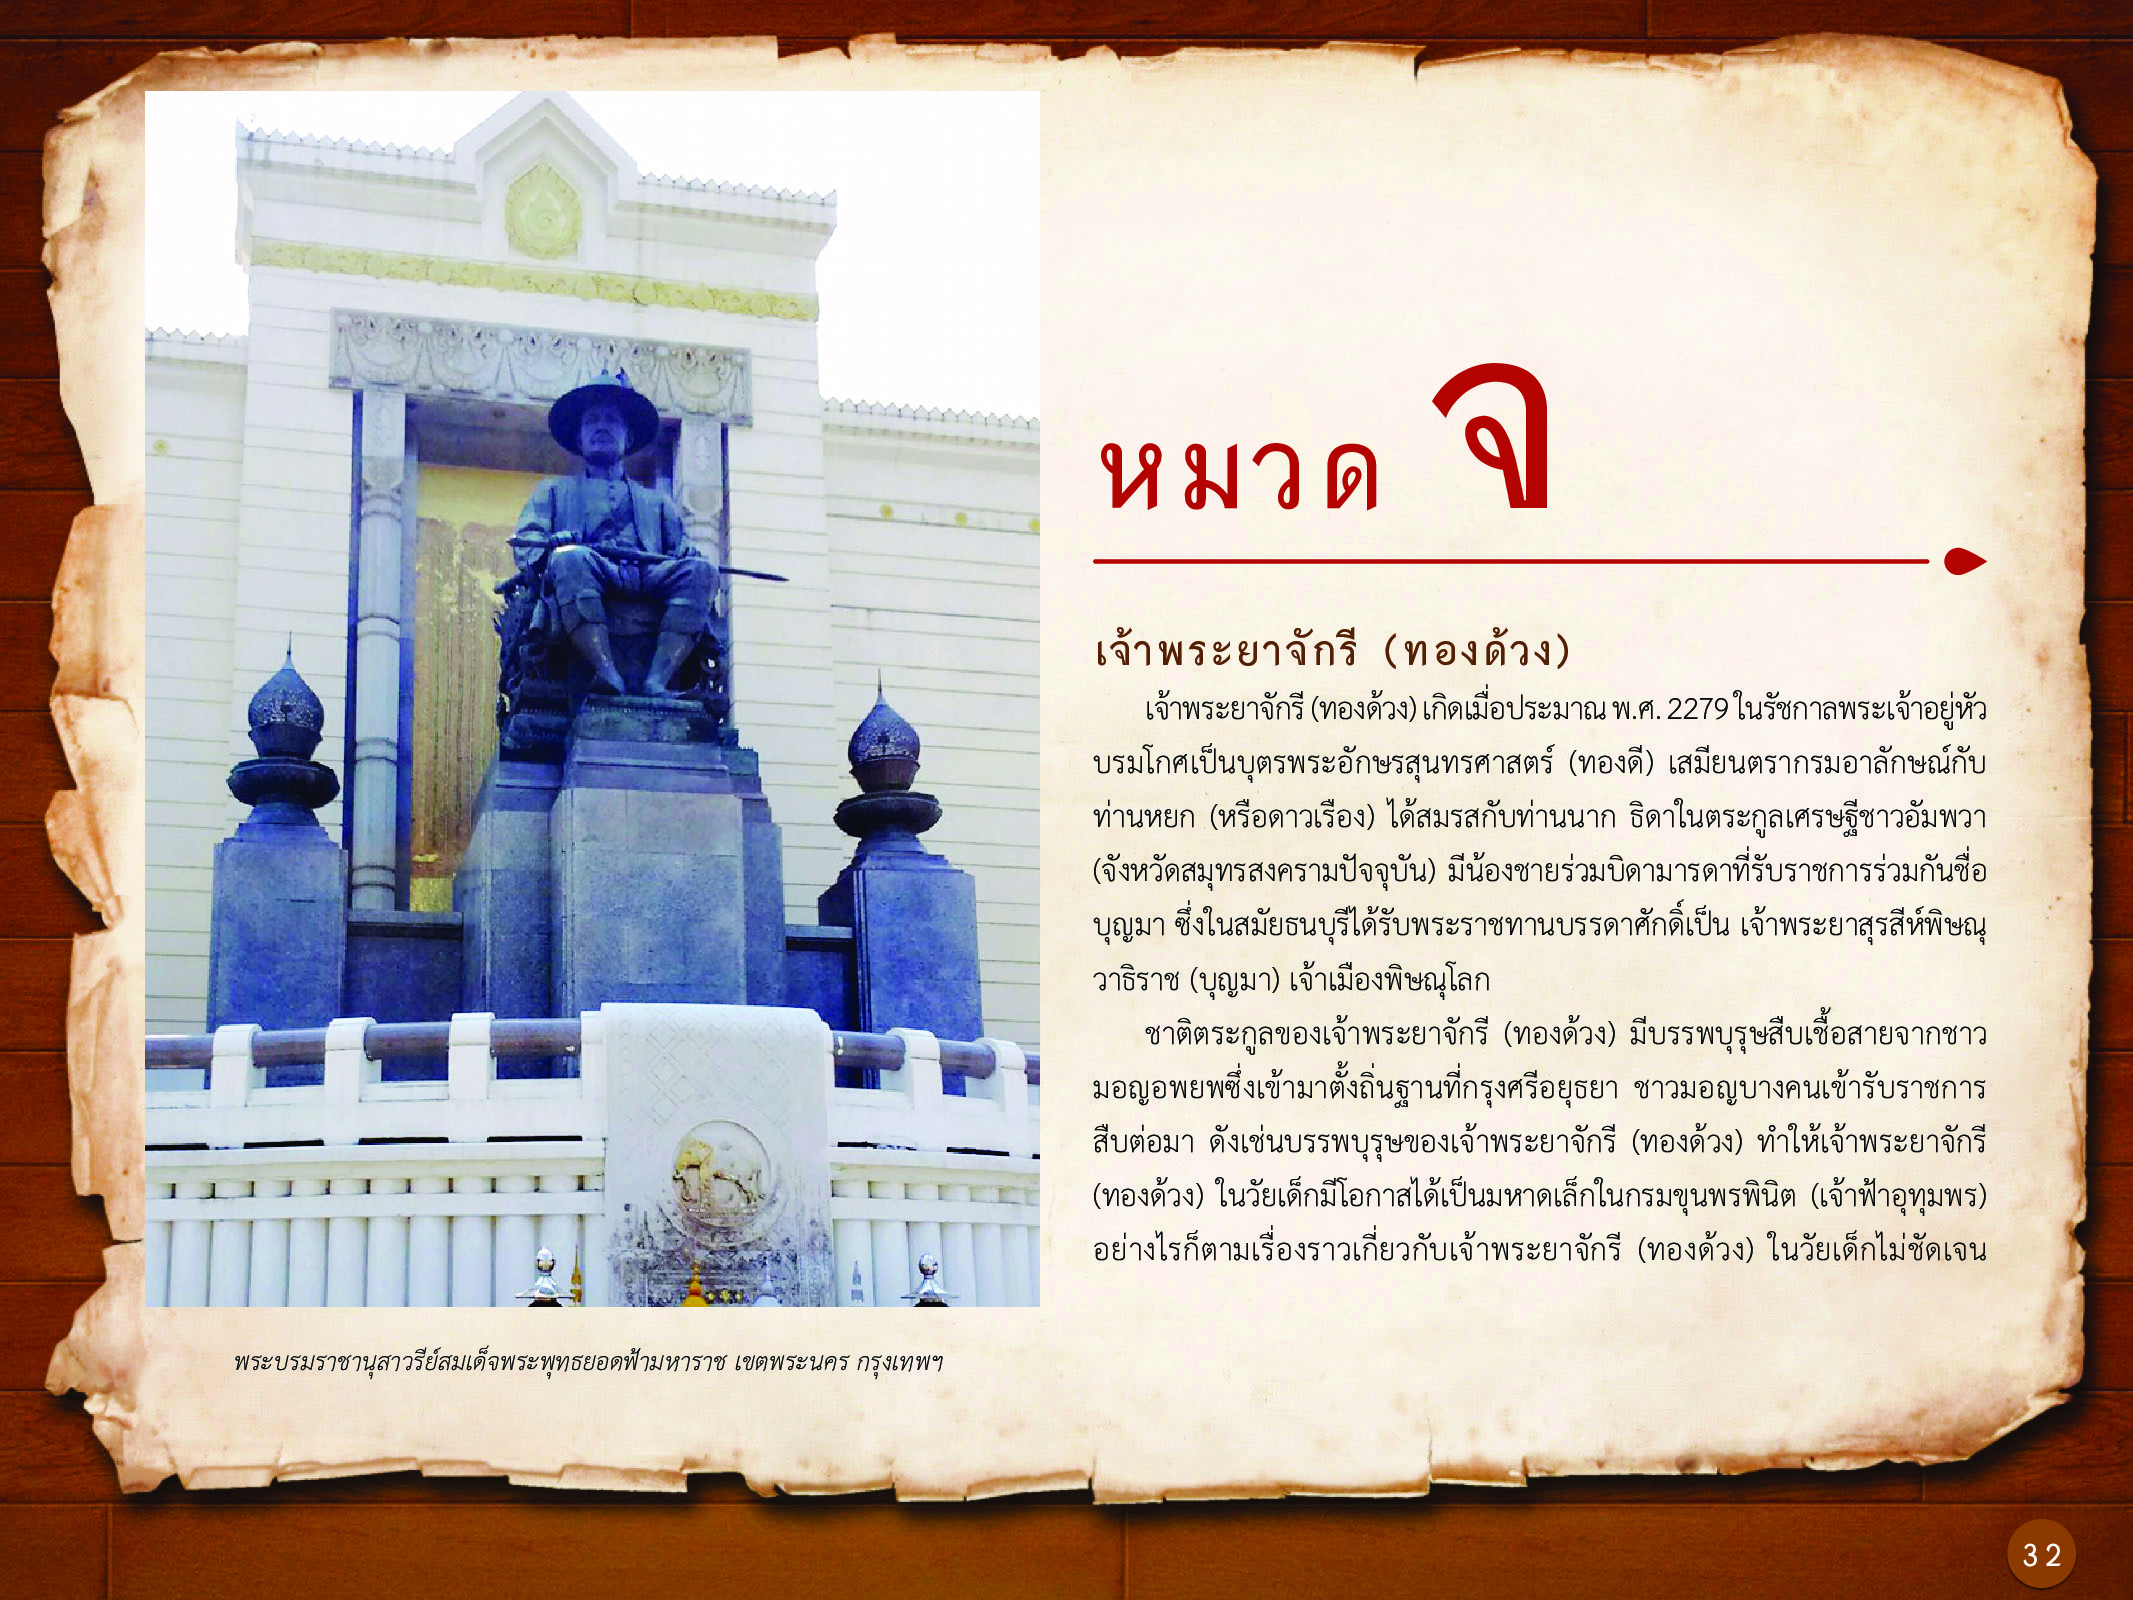 ประวัติศาสตร์กรุงธนบุรี ./images/history_dhonburi/32.jpg